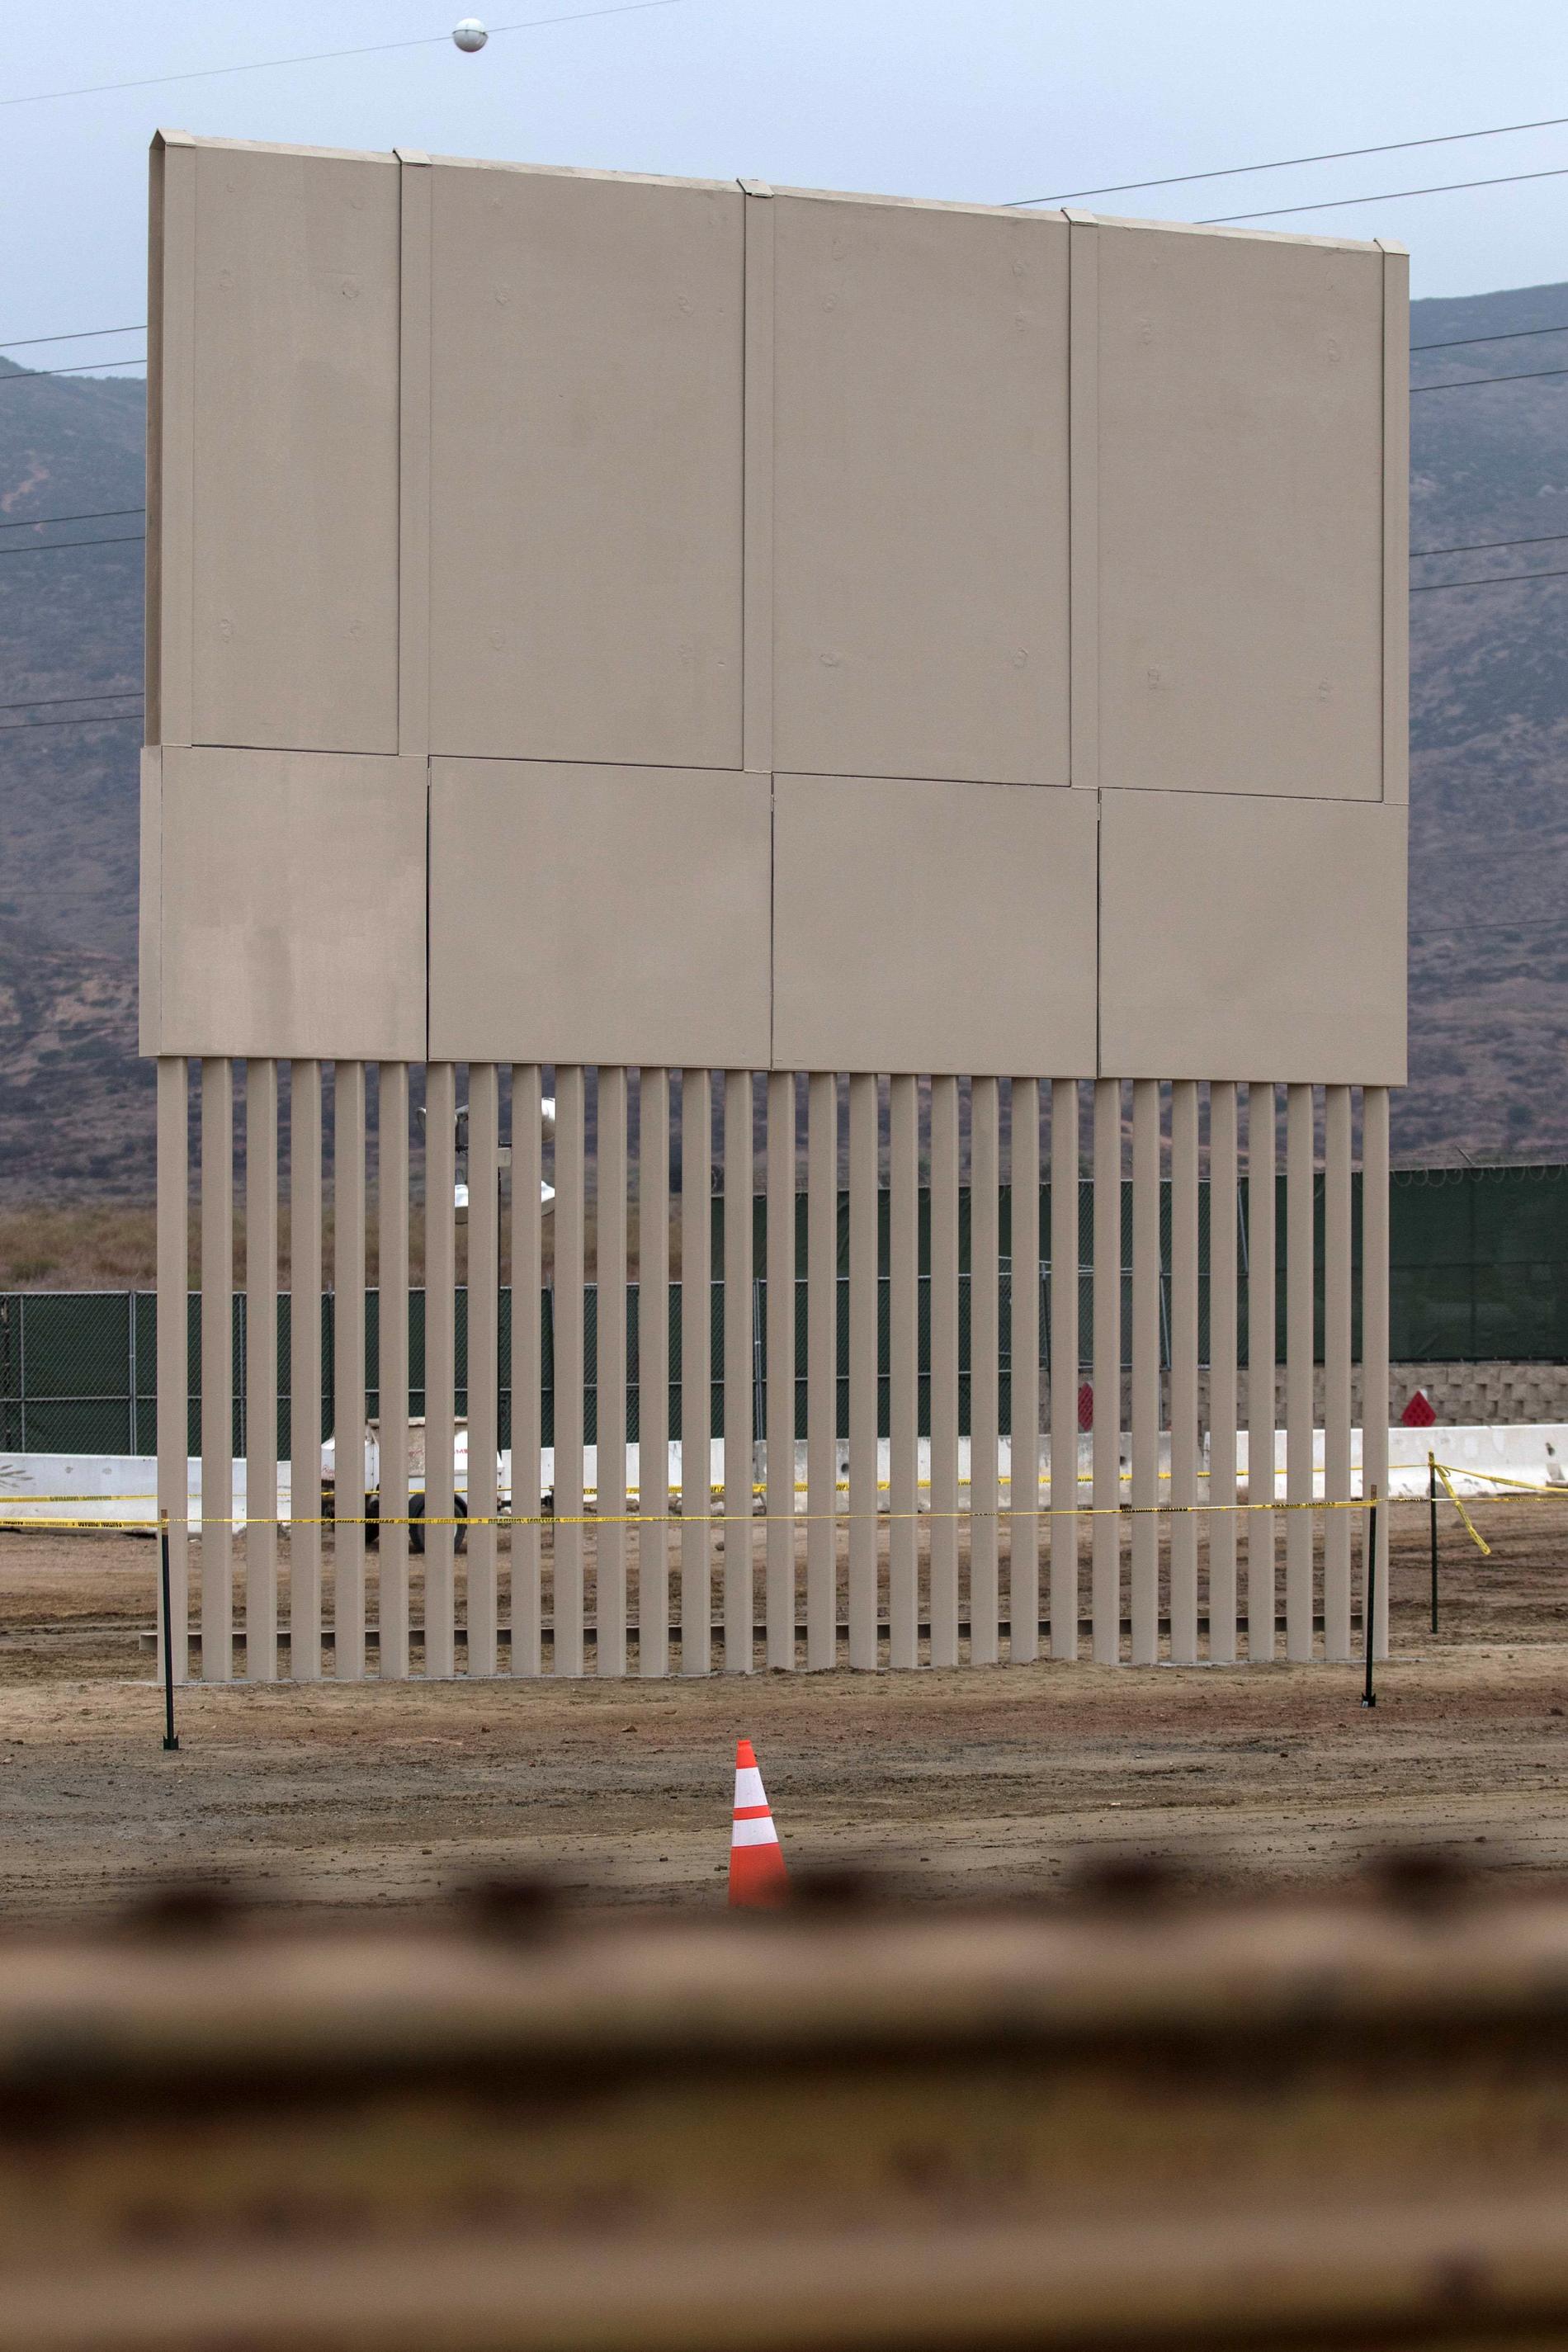 Så kan Trumps mur komma att se ut